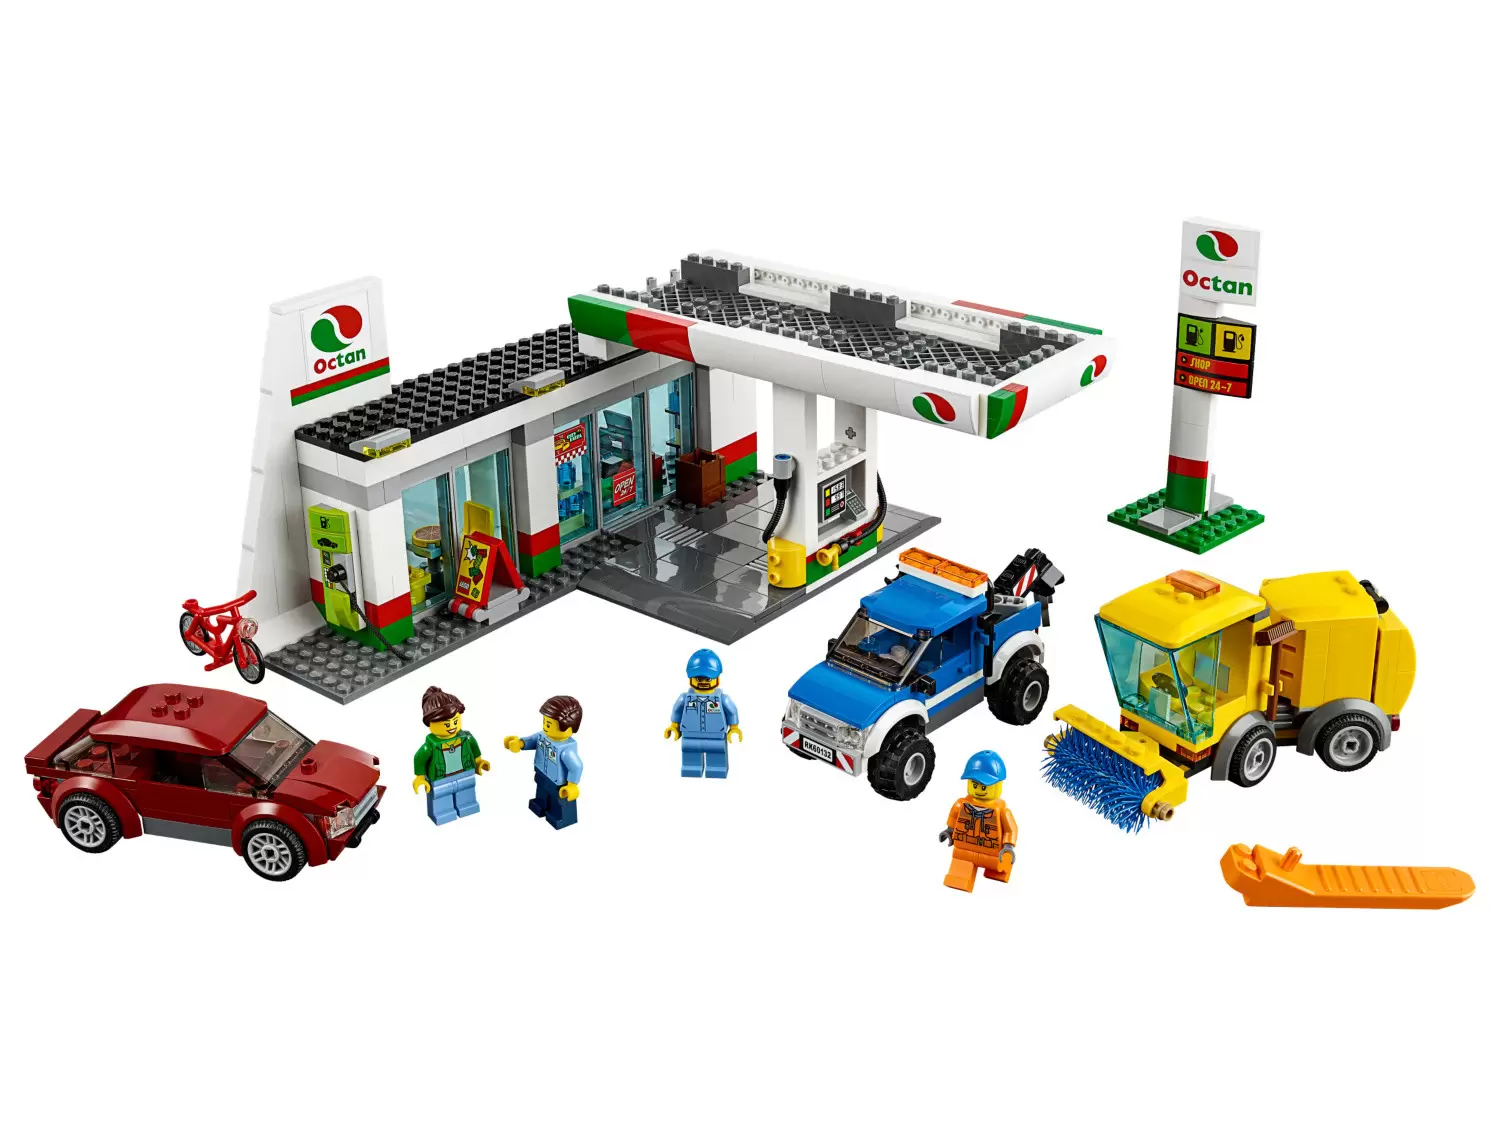 LEGO CITY - Service Station